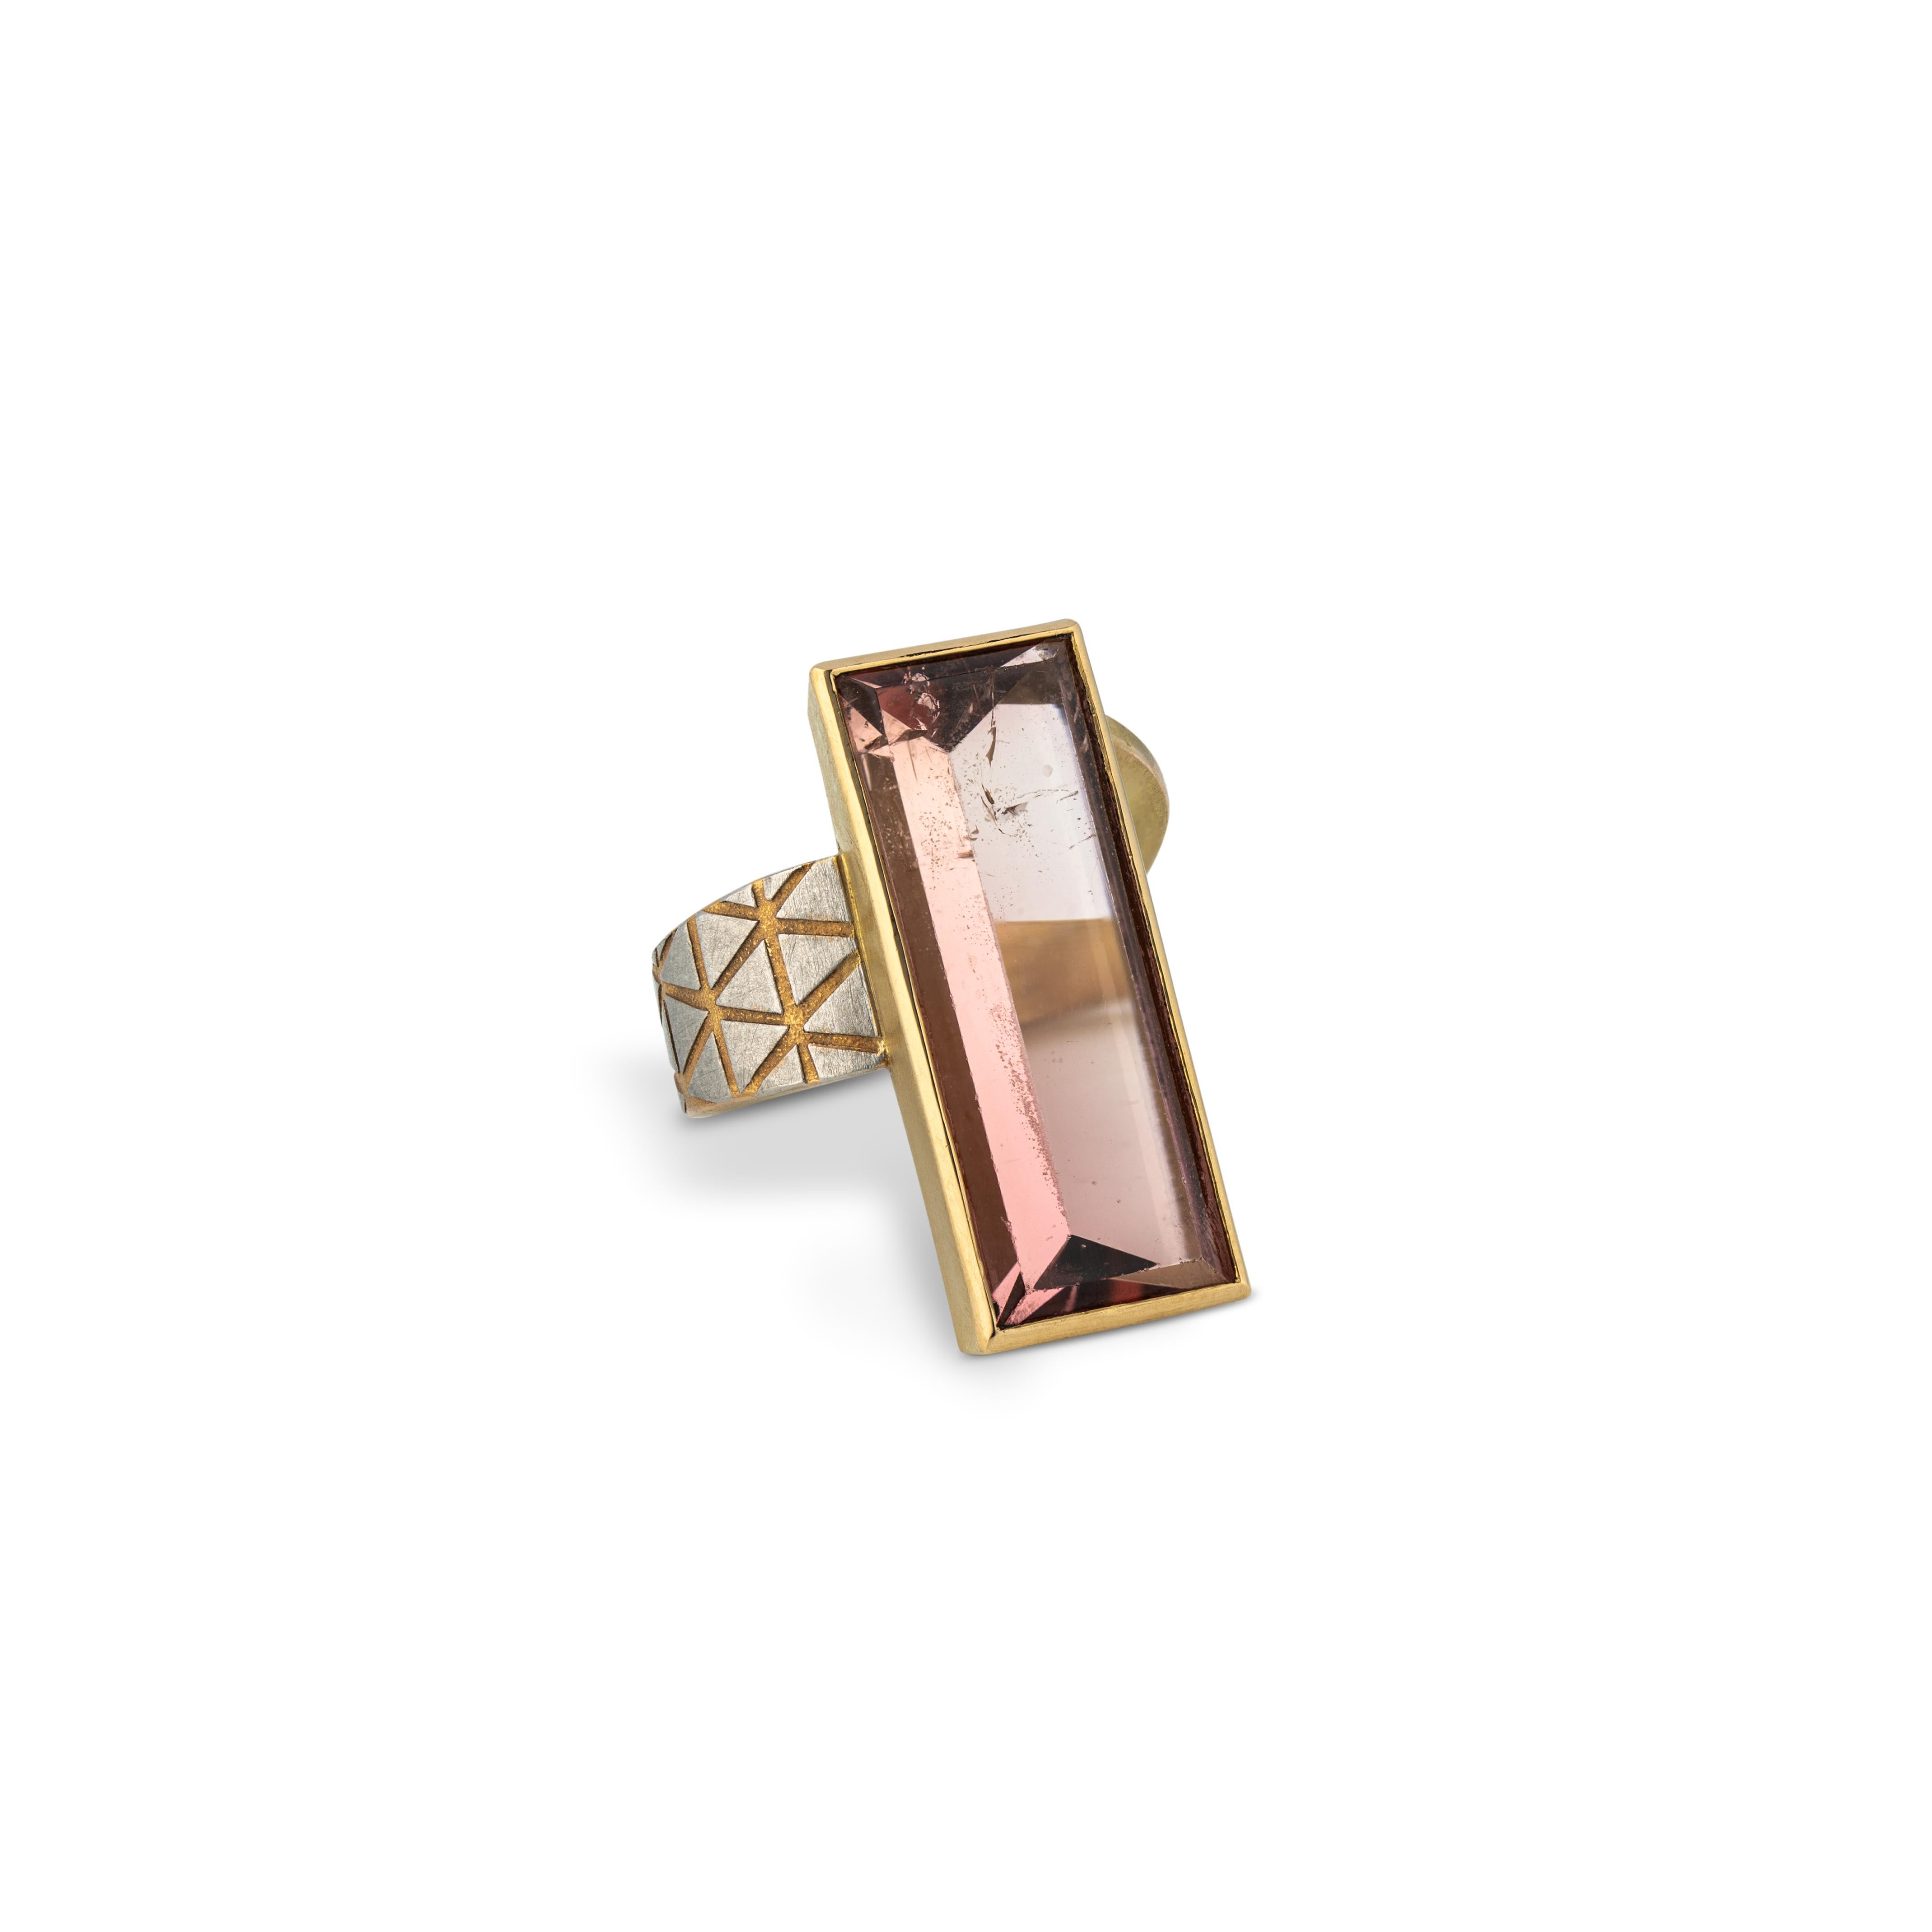 La magnifique bague de Zobel est un chef-d'œuvre d'artisanat. Ce design inhabituel est typique de l'Atelier Zobel.
Avec une tourmaline de couleur rose de 30 x 11 mm / 1.18 x 0.43 pouces, sertie en or jaune sur un anneau en or jaune qui est décoré